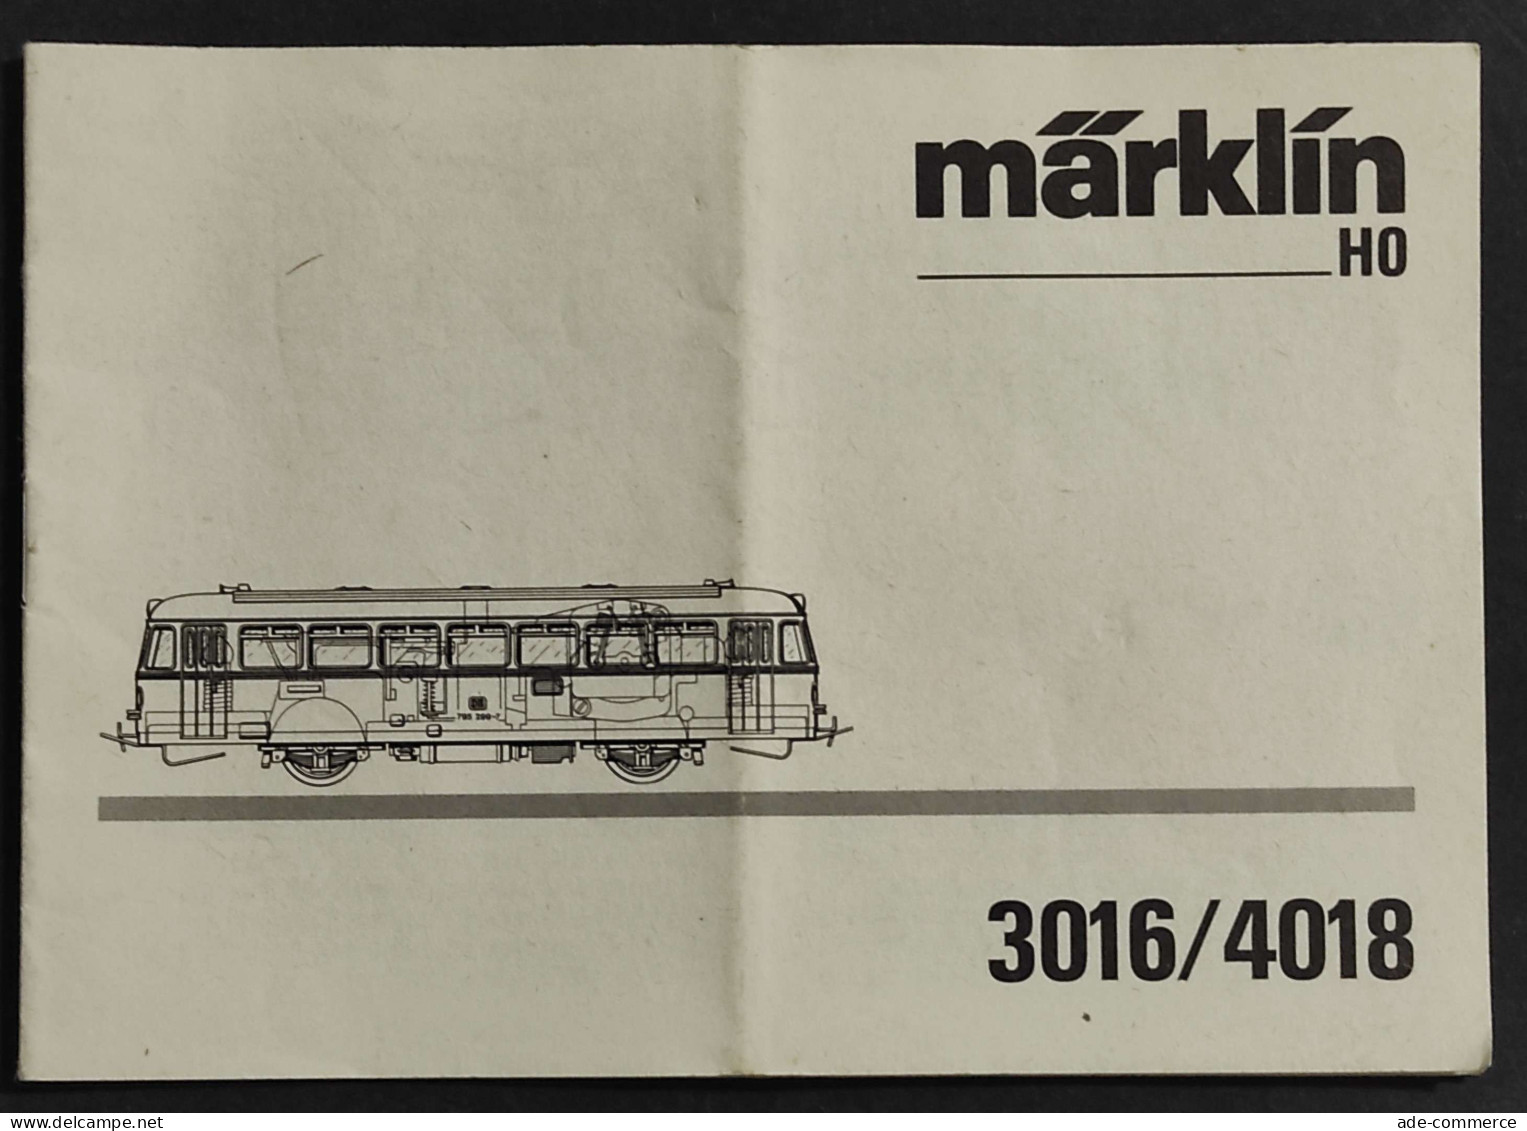 Libretto Istruzioni Marklin HO - 3016/4018 - Modellismo Ferroviario - Ohne Zuordnung